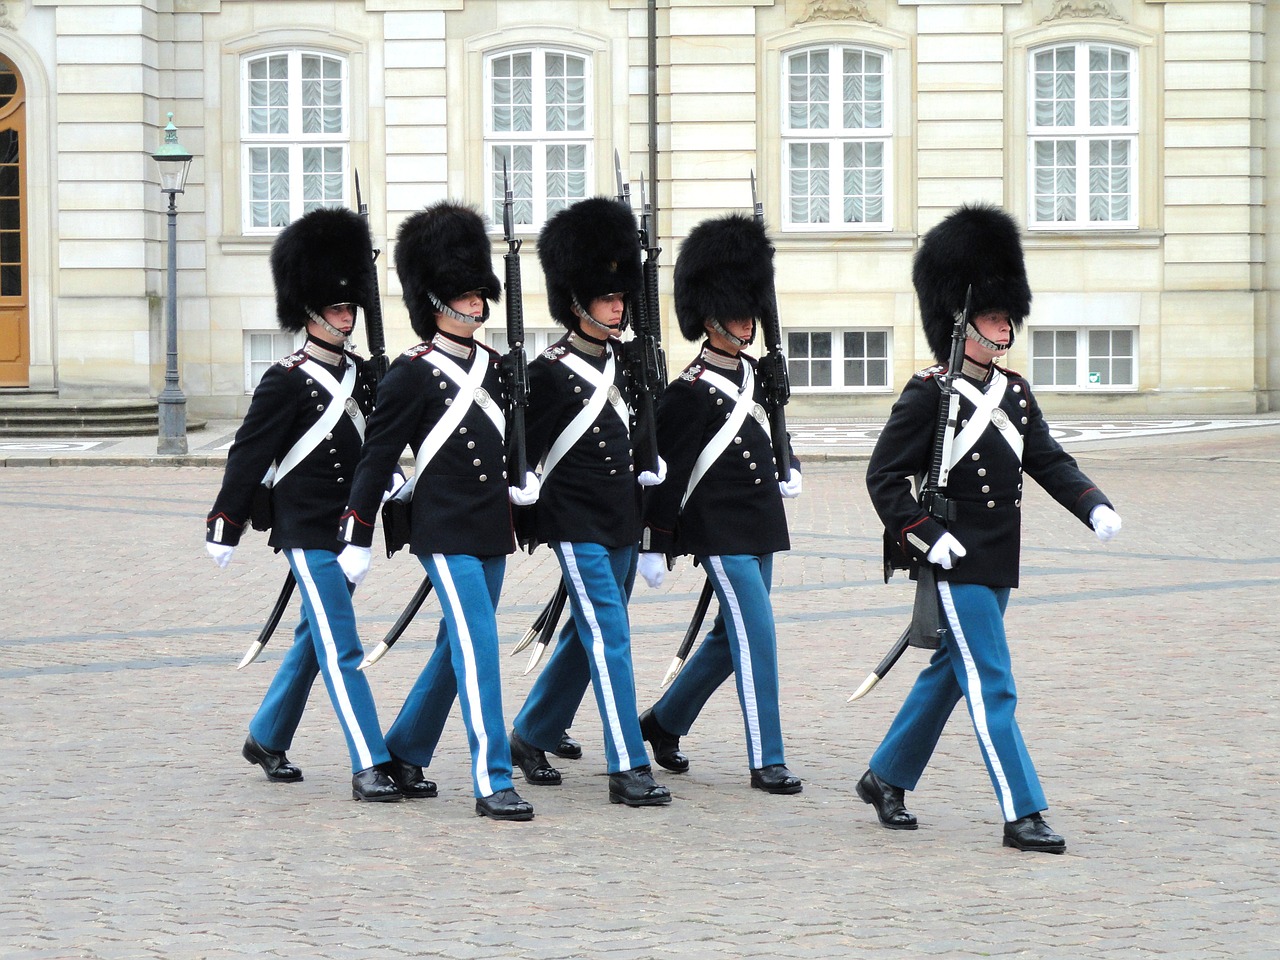 Apsaugai, Amalienborg, Rūmai, Kopenhaga, Denmark, Liemenos Skrybėlės, Kareiviai, Karališkasis, Saugumas, Tradicija